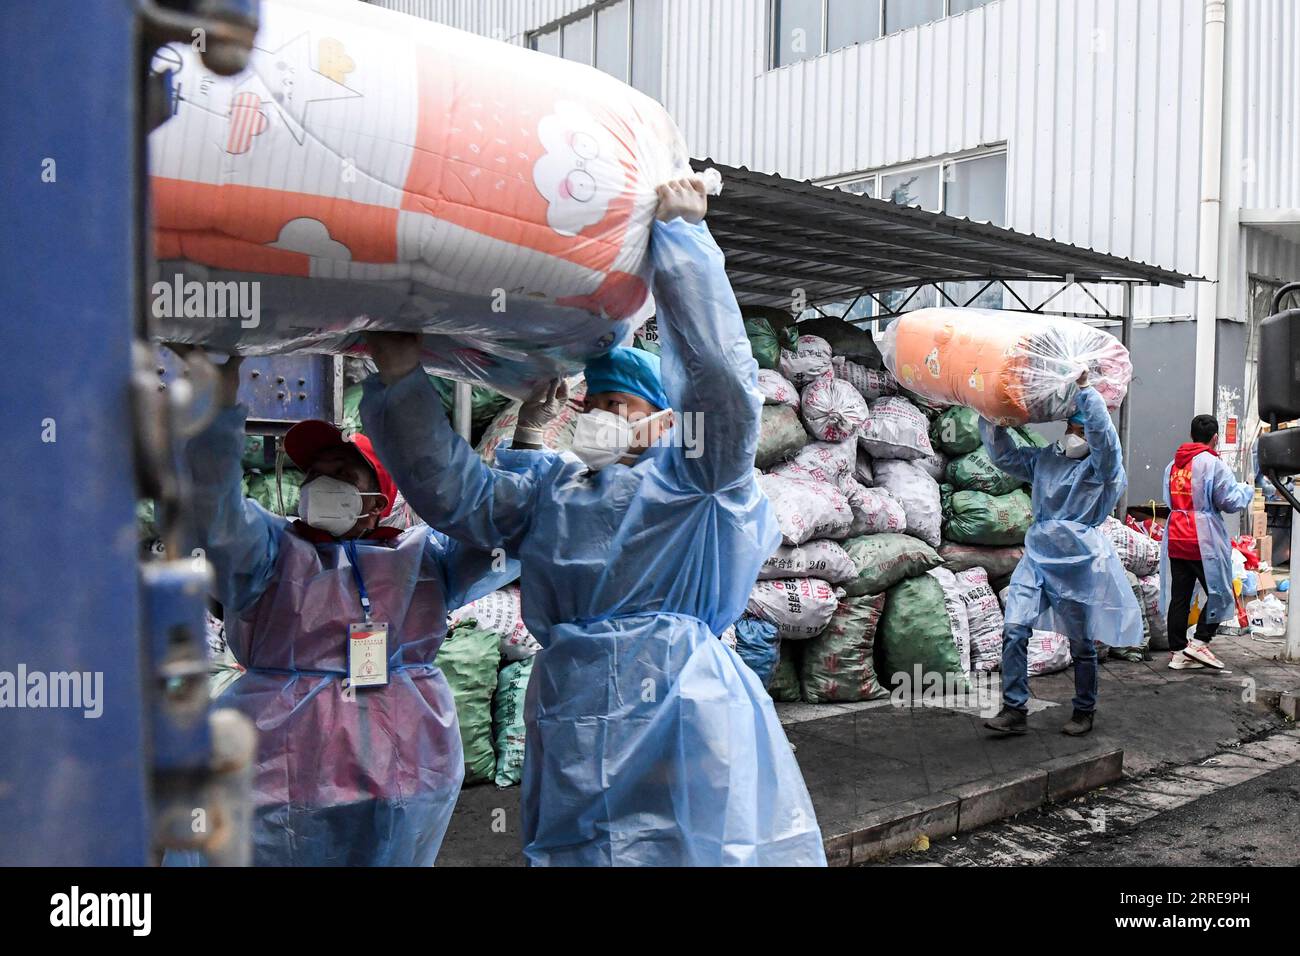 220212 -- DEBAO, 12 febbraio 2022 -- i lavoratori del personale caricano trapunte per il personale di prima linea nella contea di Debao della città di Baise, nella regione autonoma del Guangxi Zhuang della Cina meridionale, 11 febbraio 2022. Materiali viventi e medici sono stati consegnati continuamente a Debao per aiutare la lotta contro la recente rinascita della pandemia di COVID-19 nella contea. CHINA-GUANGXI-DEBAO-COVID-19-ANTI-EPIDEMIC SUPPLIES CN CAOXYIMING PUBLICATIONXNOTXINXCHN Foto Stock